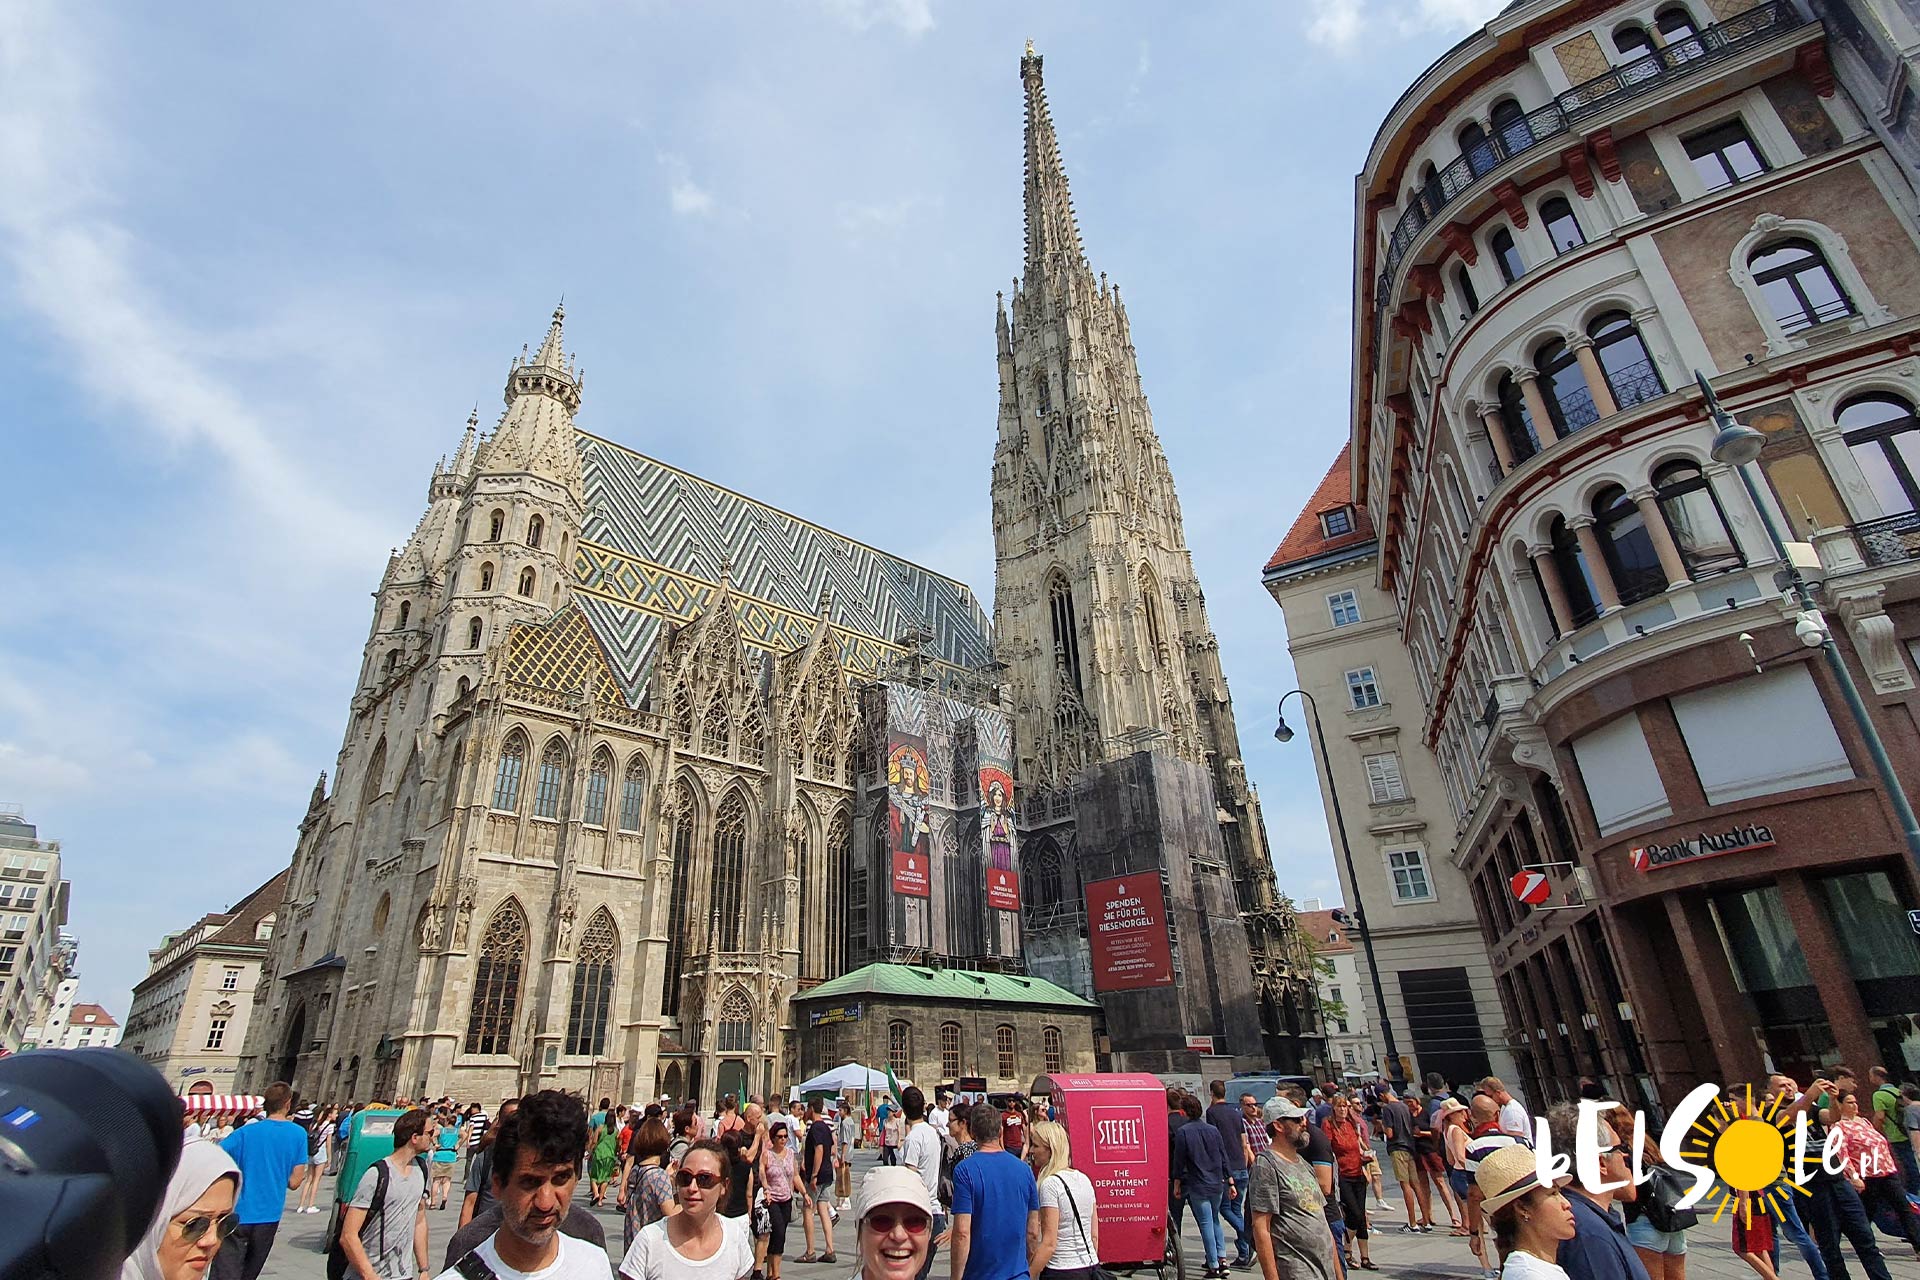 Katedra Świętego Szczepana w Wiedniu